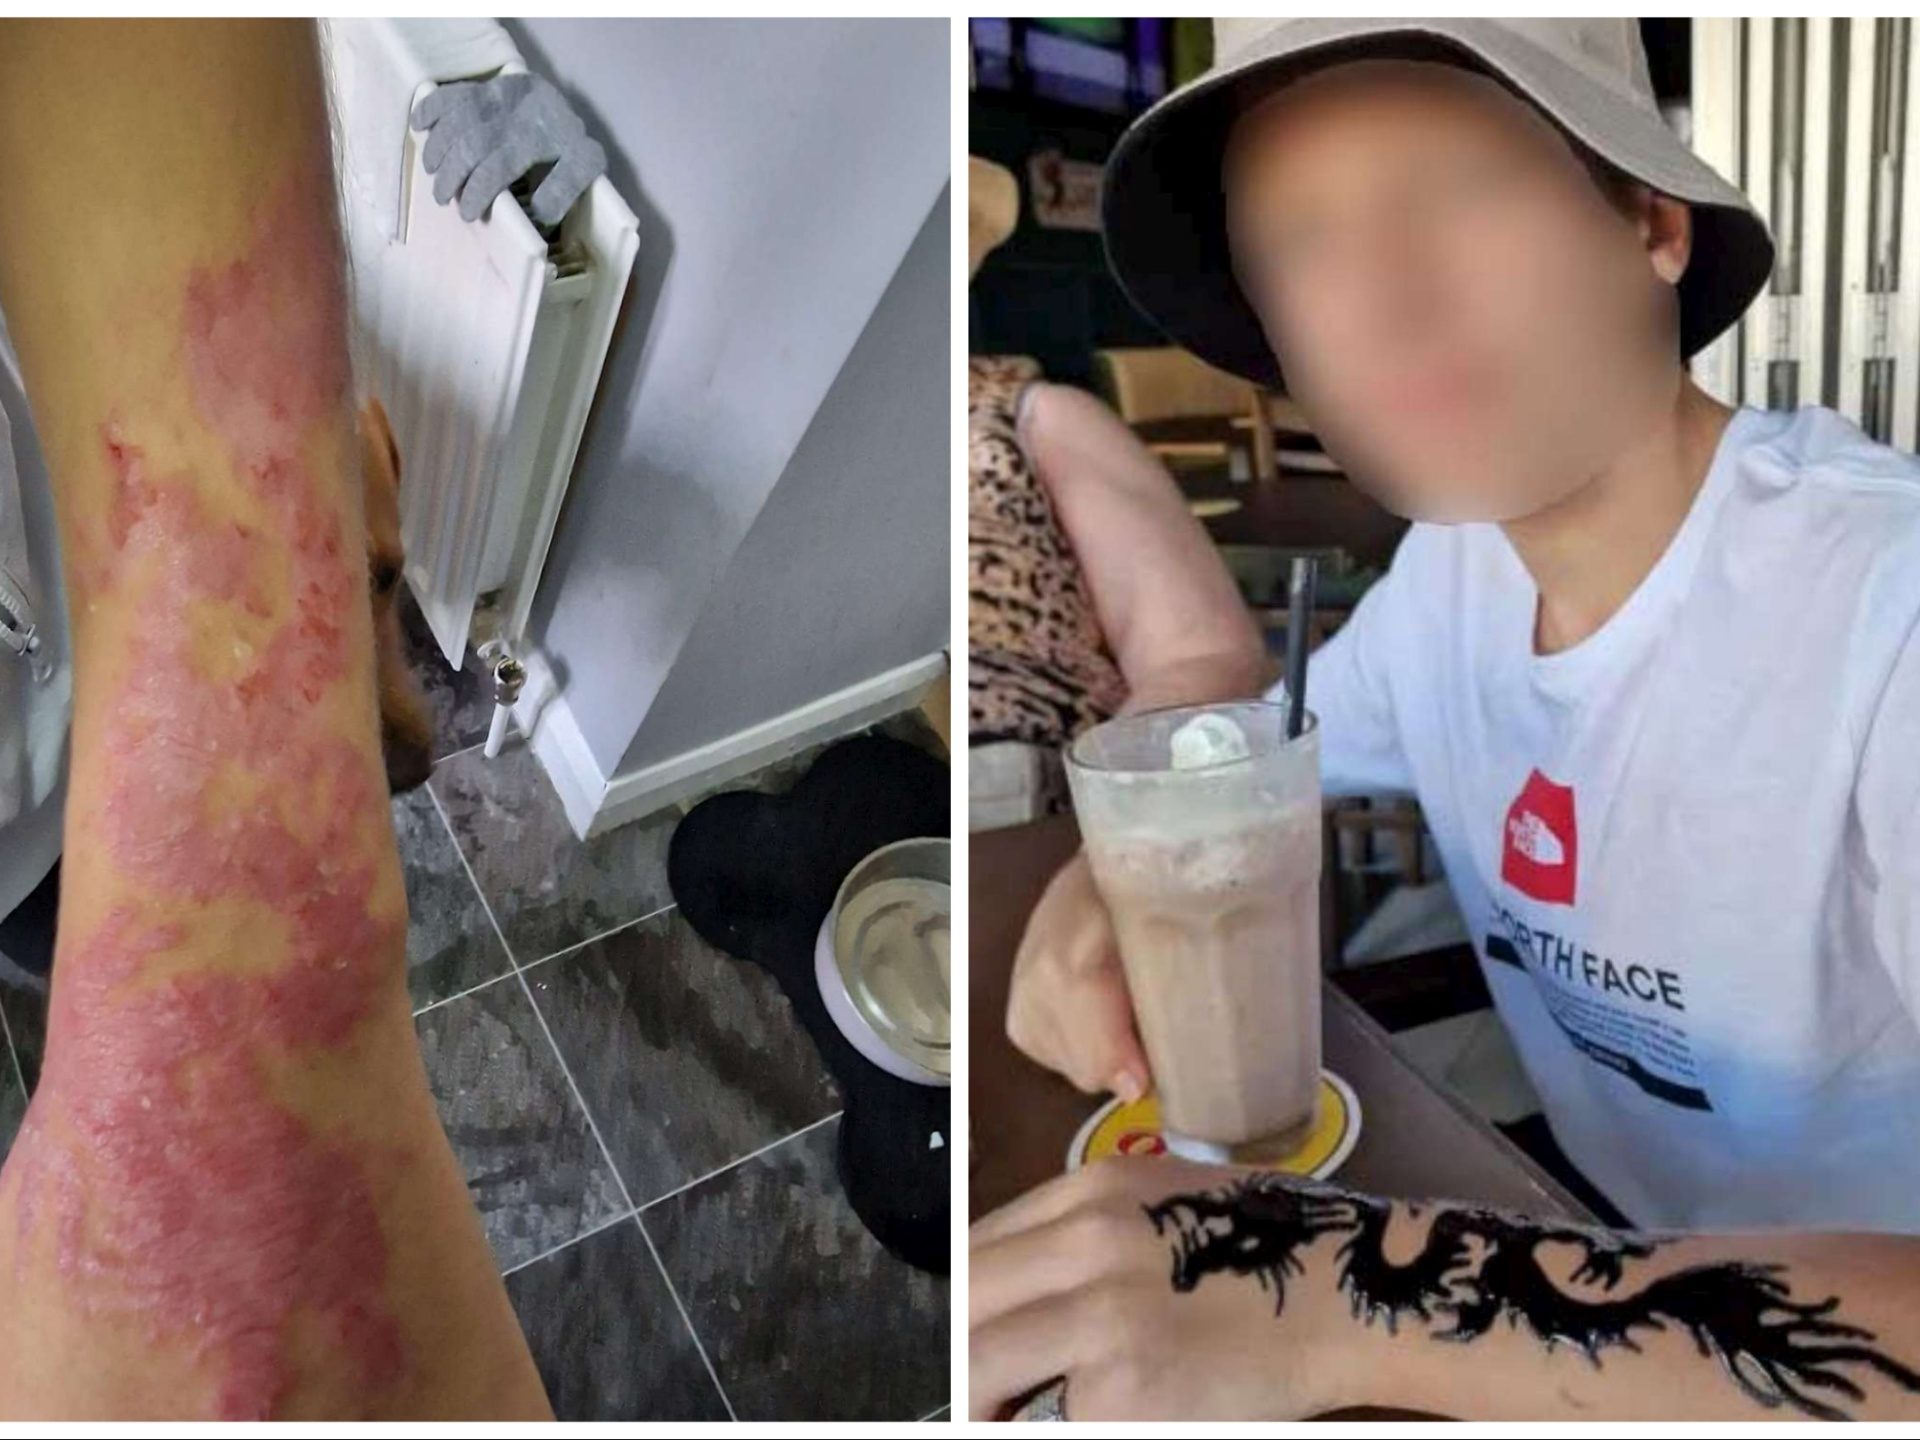 Niño se tatúa henna durante vacaciones: se quema el brazo